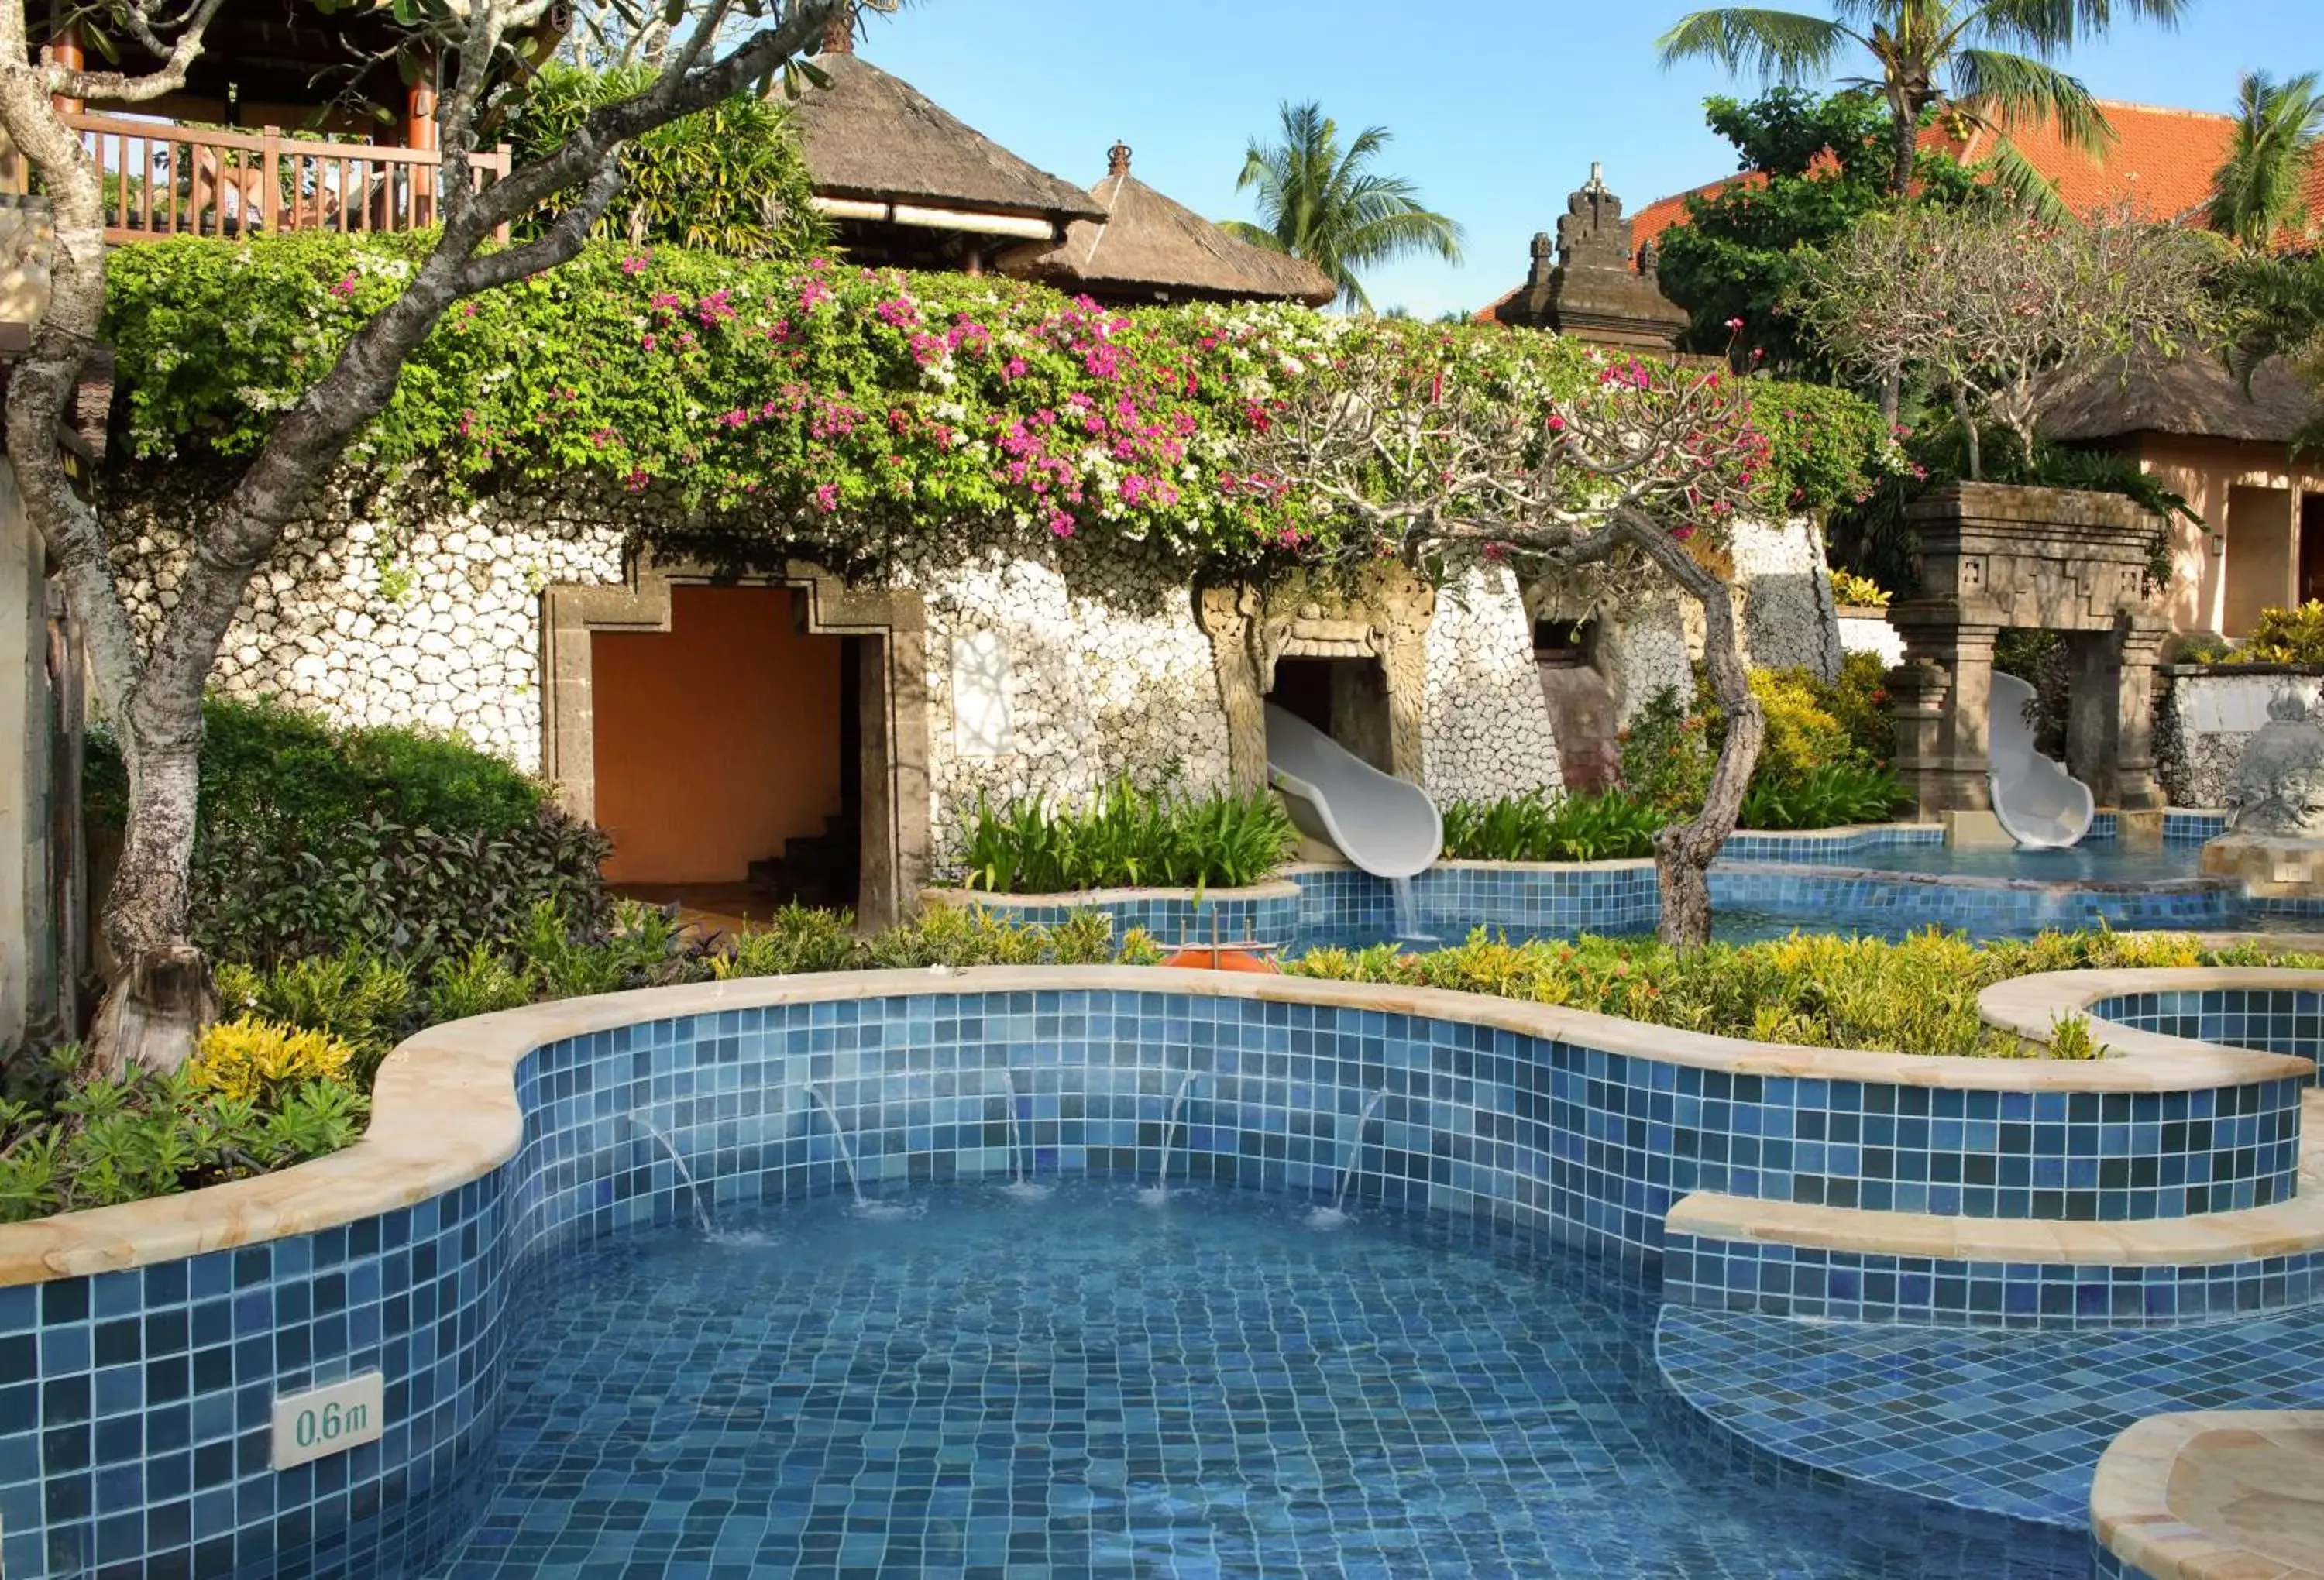 Swimming pool in AYANA Villas Bali